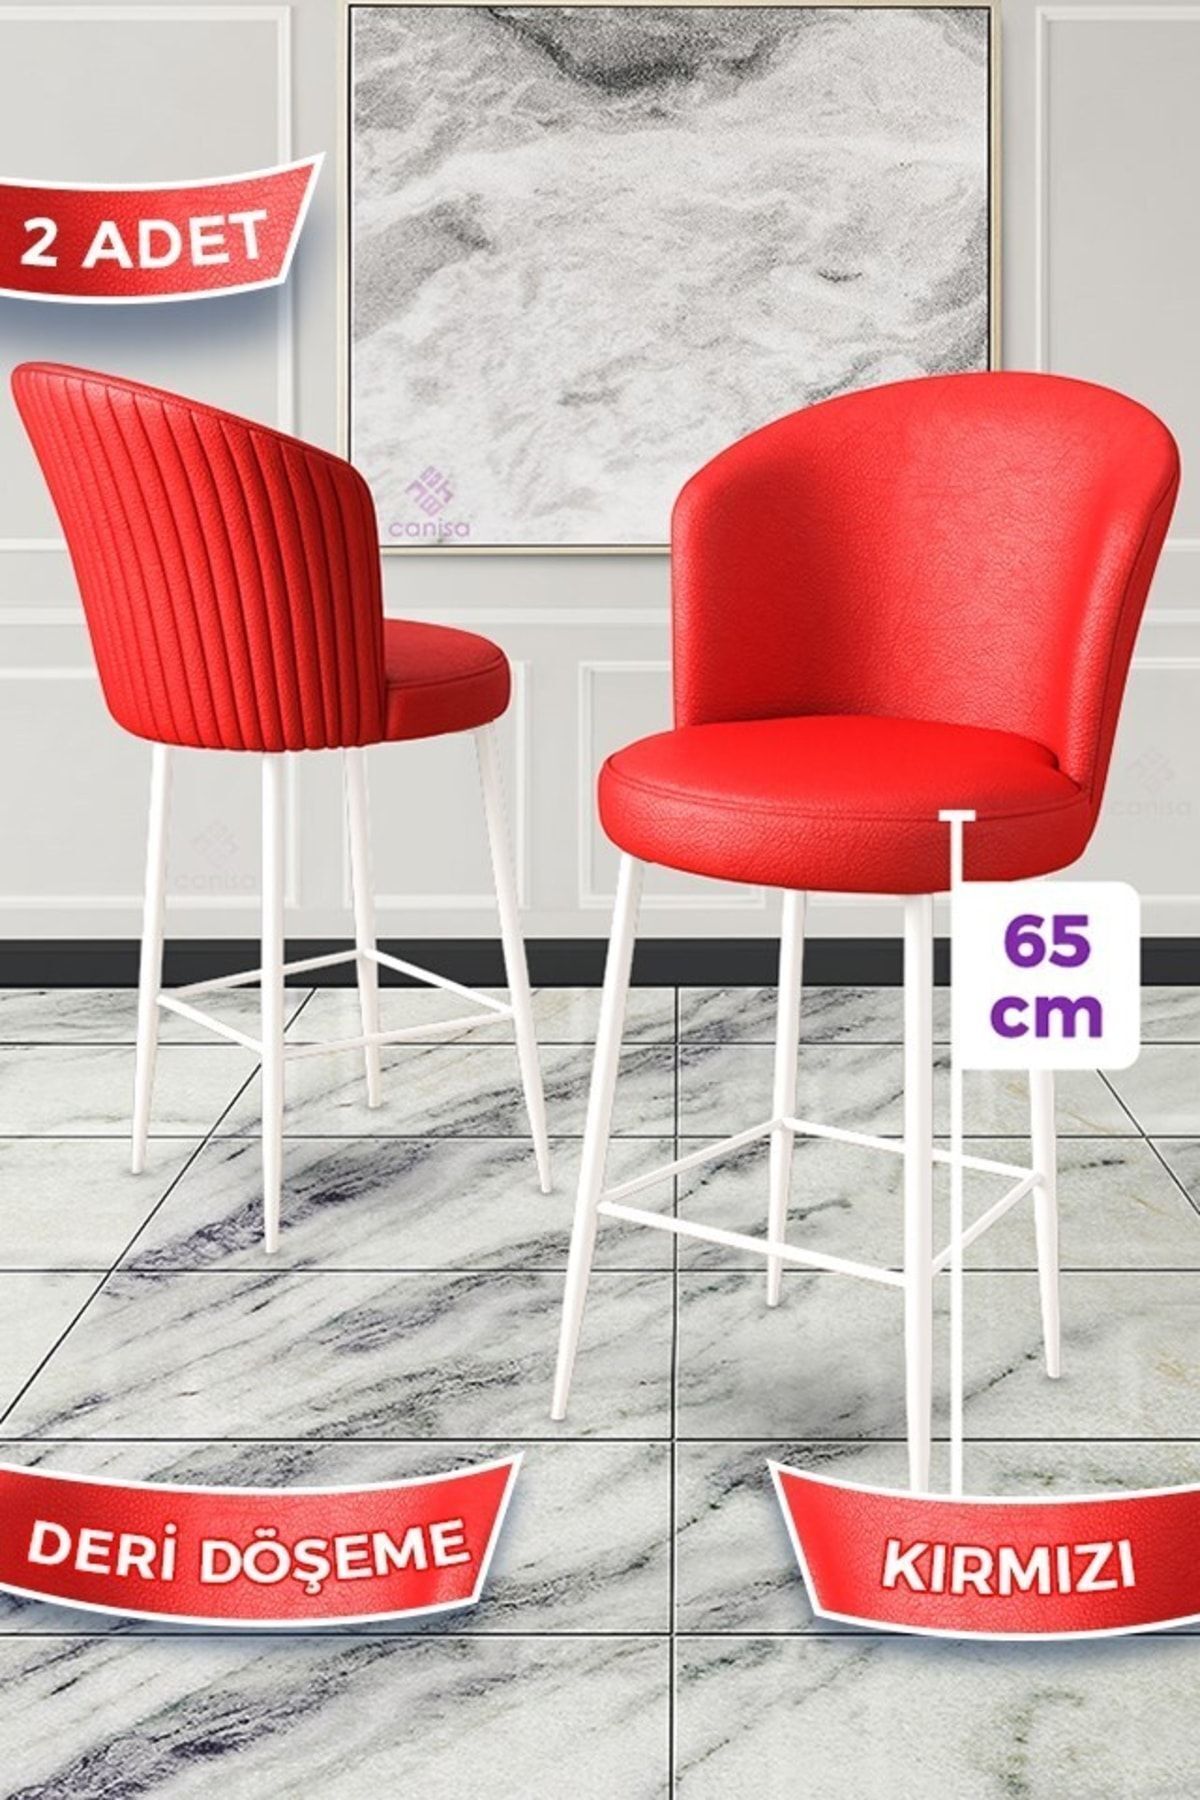 Canisa Rika Serisi 2 Adet Kırmızı 65 Cm Deri Bar Sandalyesi Beyaz Metal Ayaklı Ada Mutfak Bar Sandalyesi